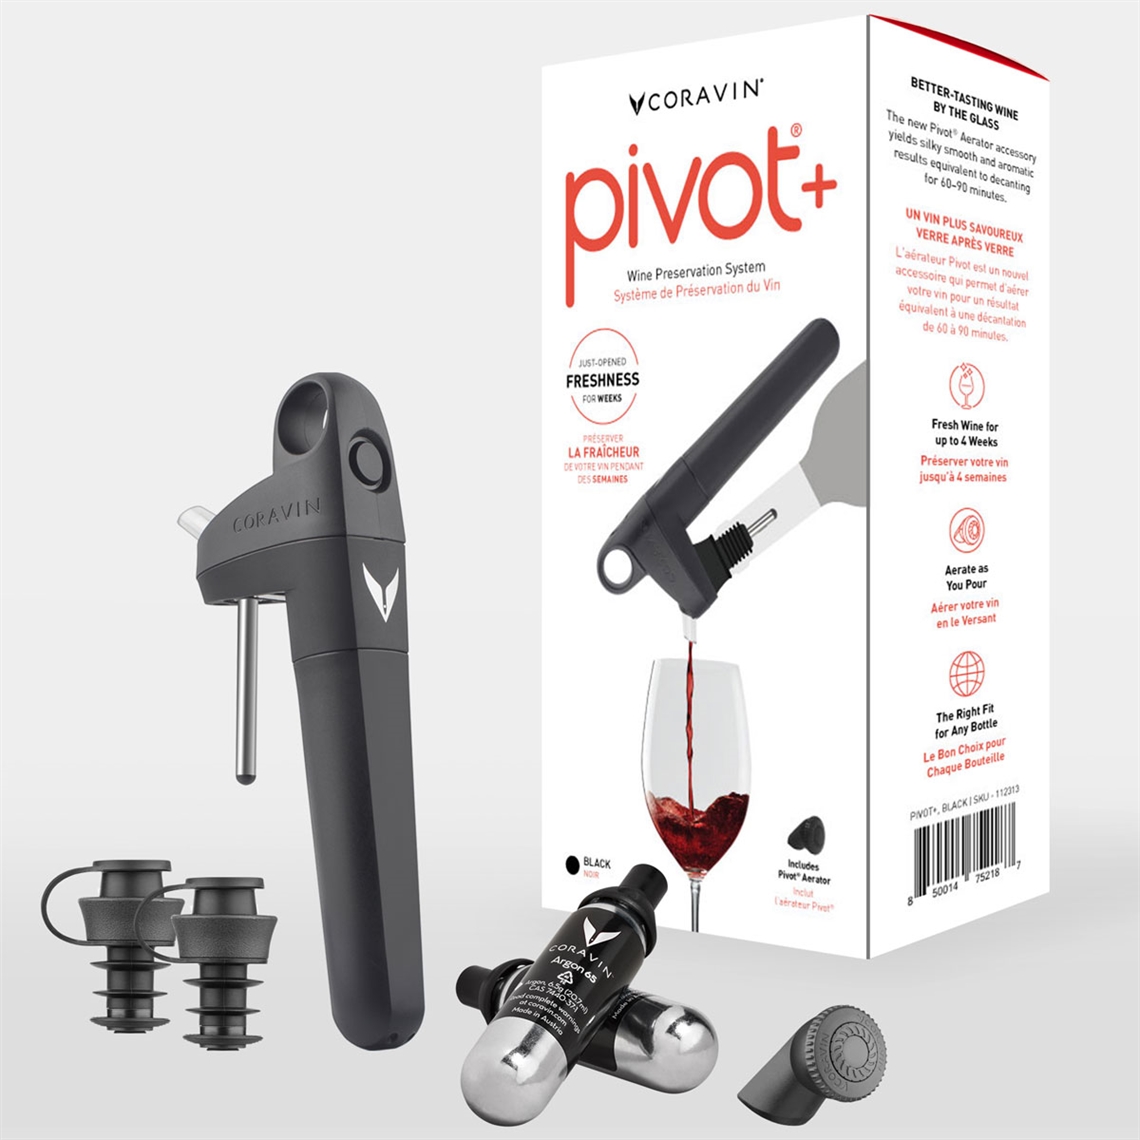 Coravin Pivot+ Wine Preservation System - Black